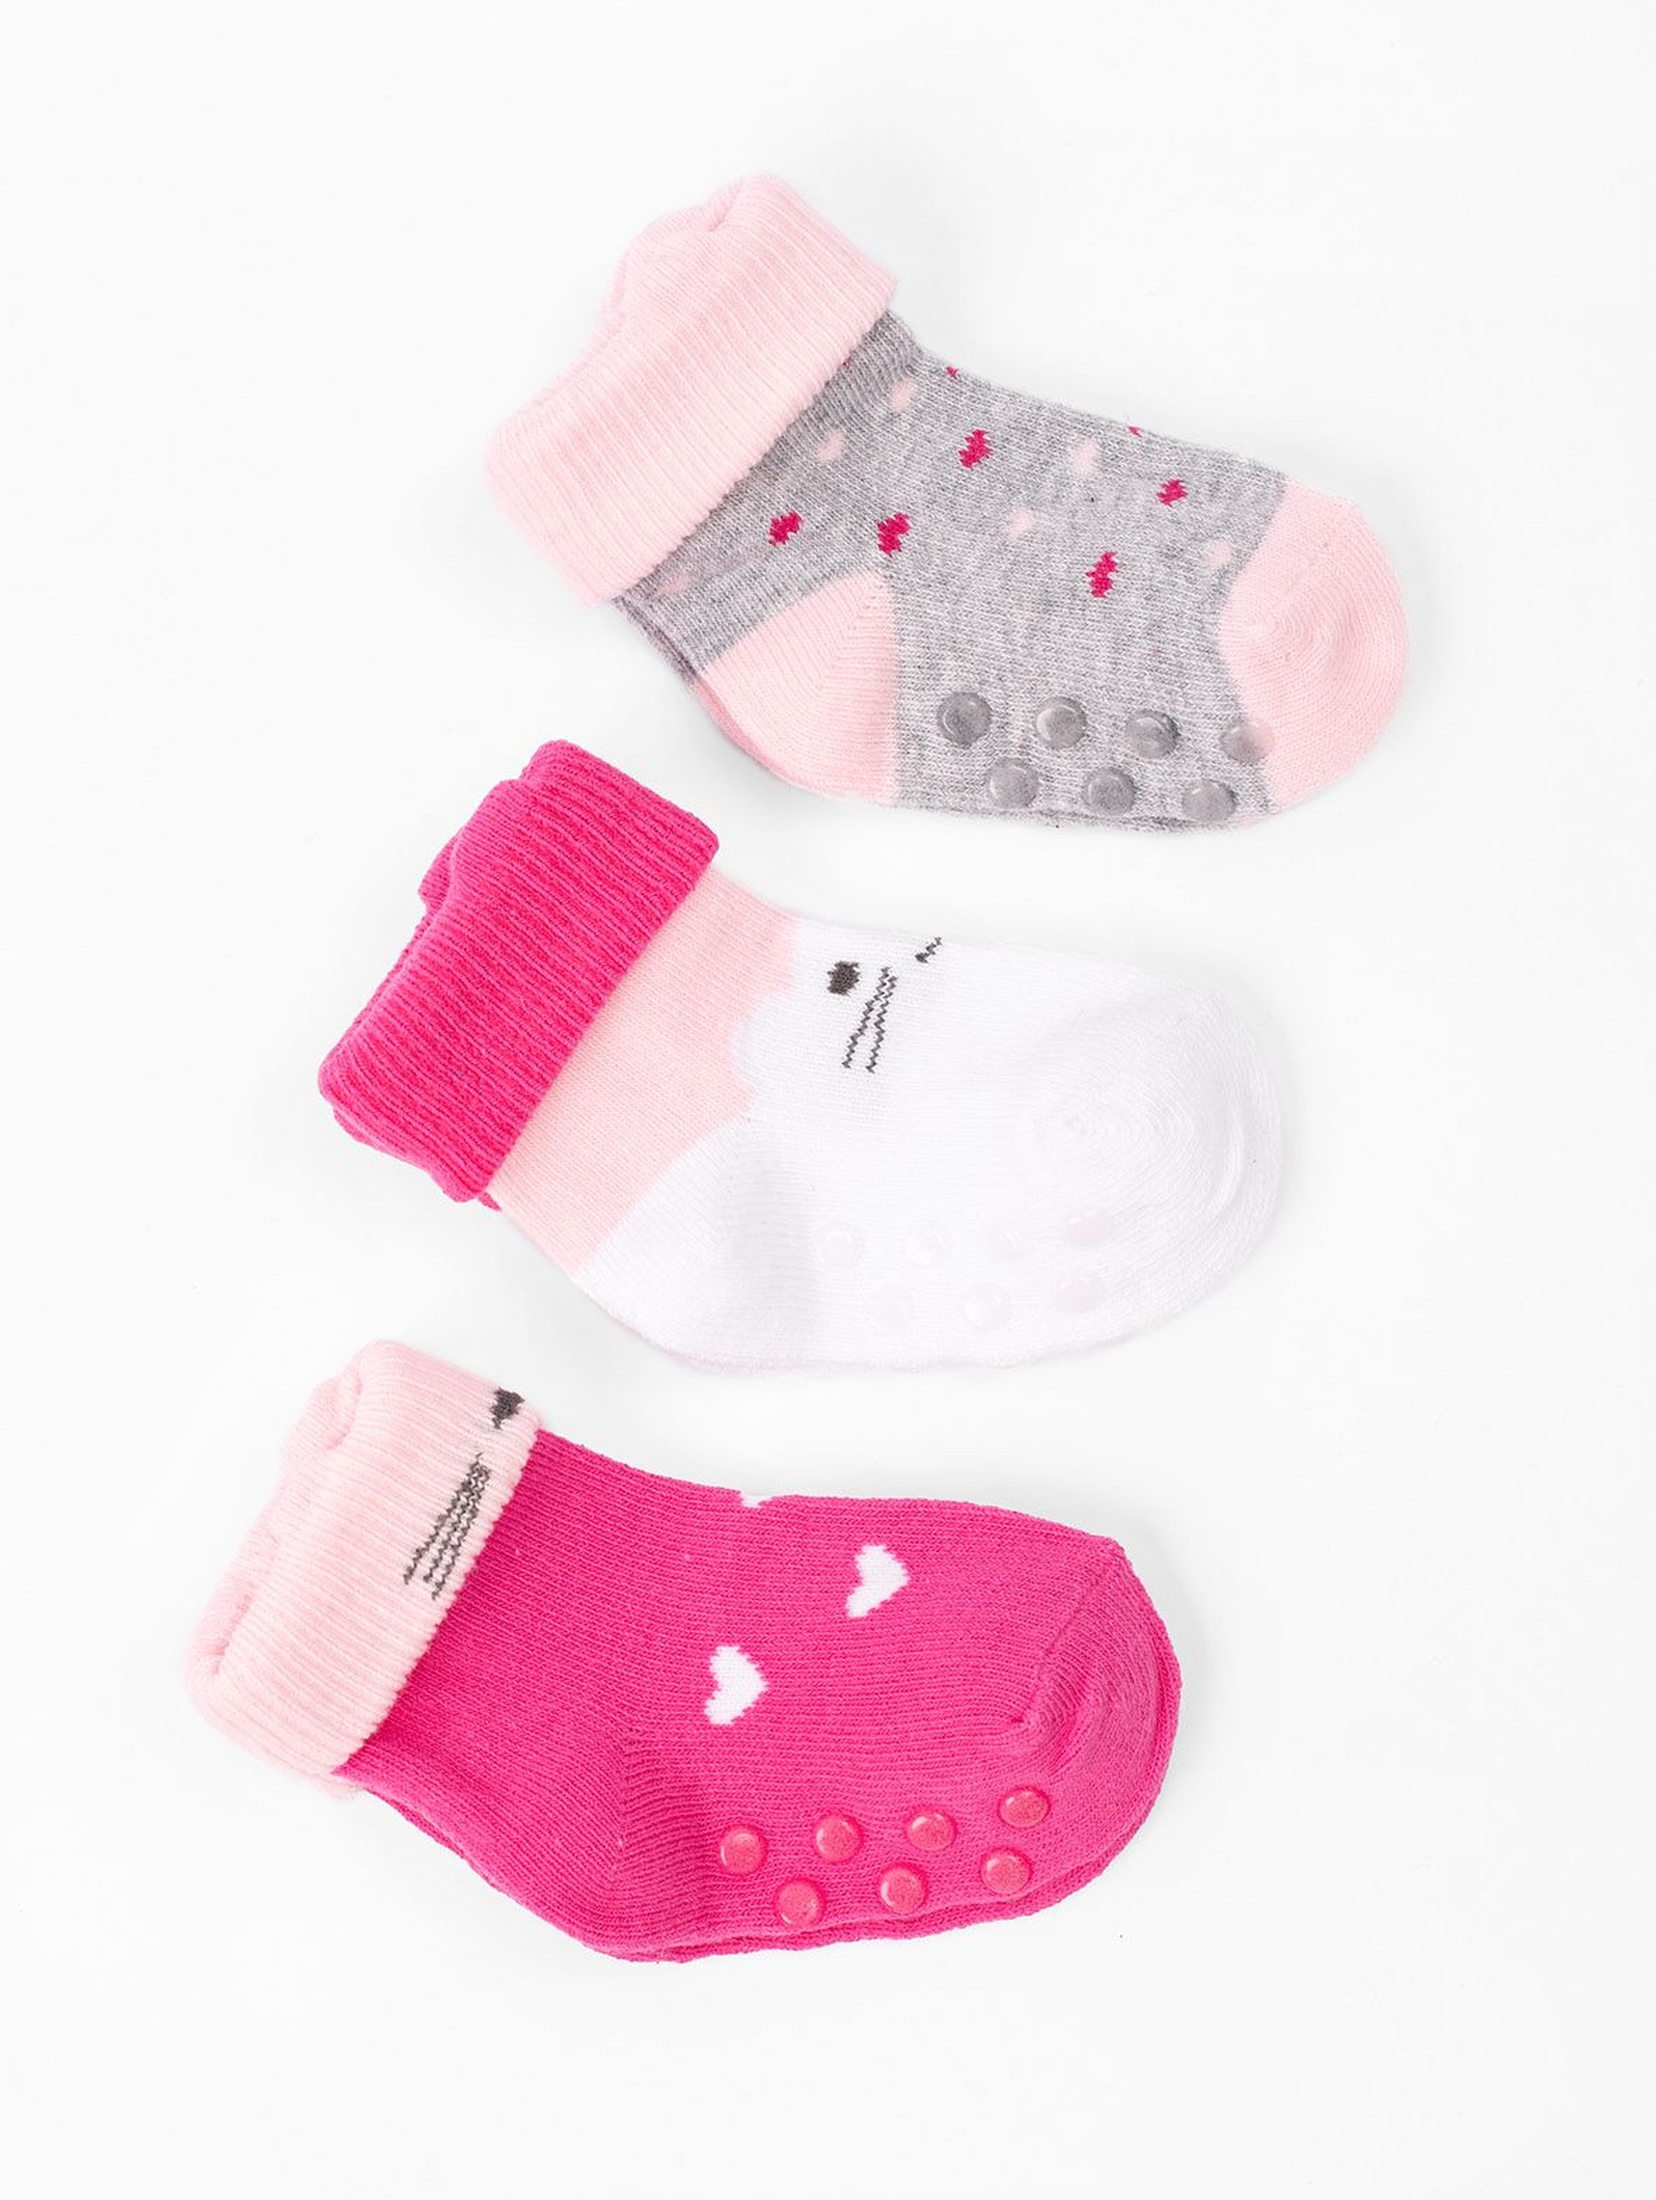 Skarpetki dla niemowlaka- różowo-szare z ABSem